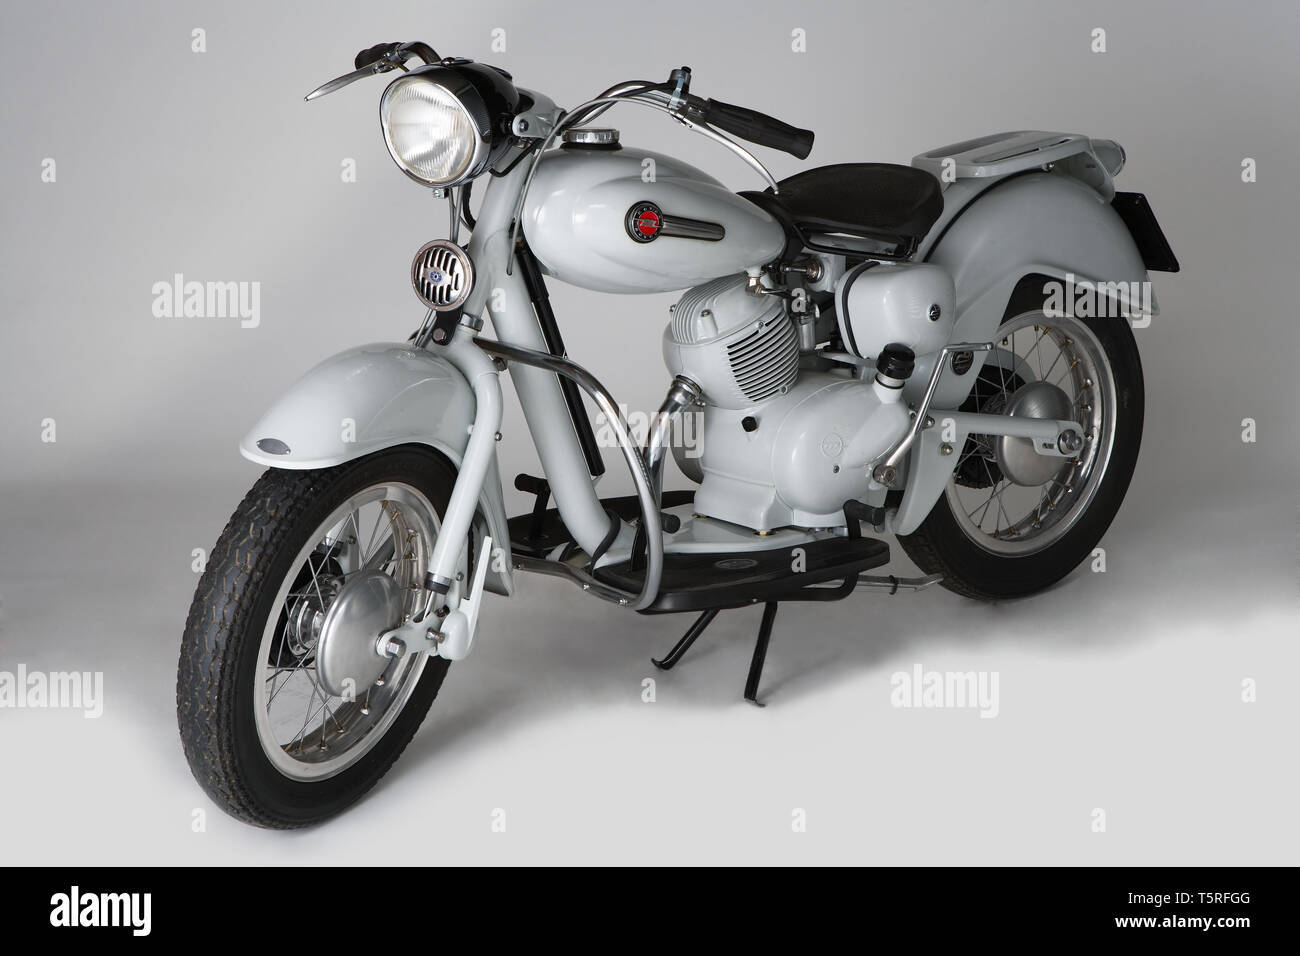 Moto d'Epoca (scooter) Motom Delfino. Marca: Motom modello: Delfino nazione: Italia: anno 1954 condizioni: restaurato cilindrata: 163 Foto de stock